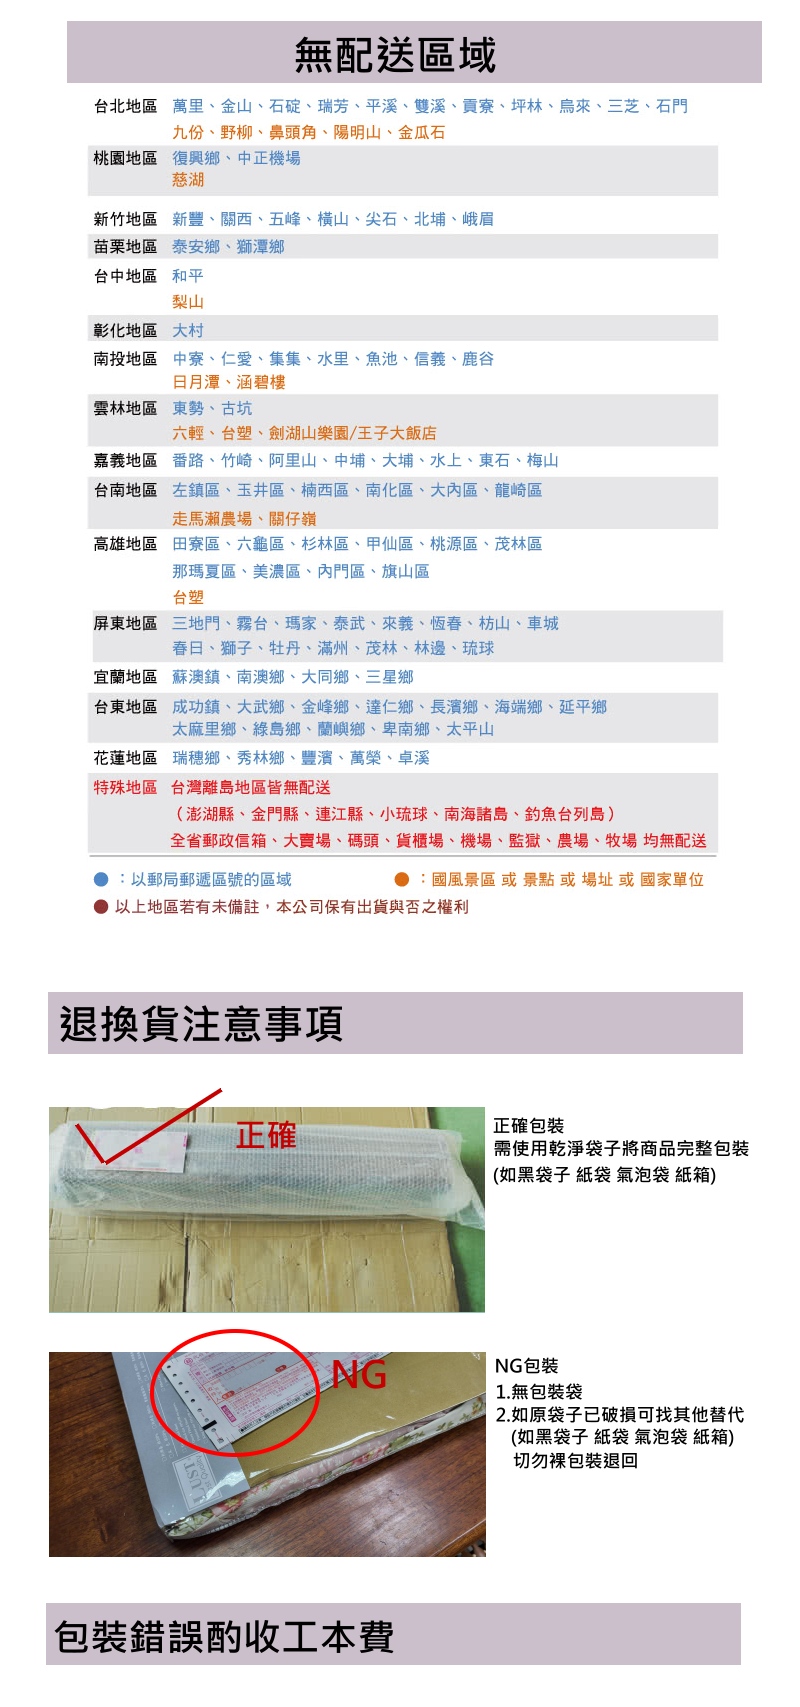 【LUST】3尺 5公分記憶床墊 全平面/備長炭記憶床墊/3M吸濕排汗-惰性矽膠床(日本原料)台灣製